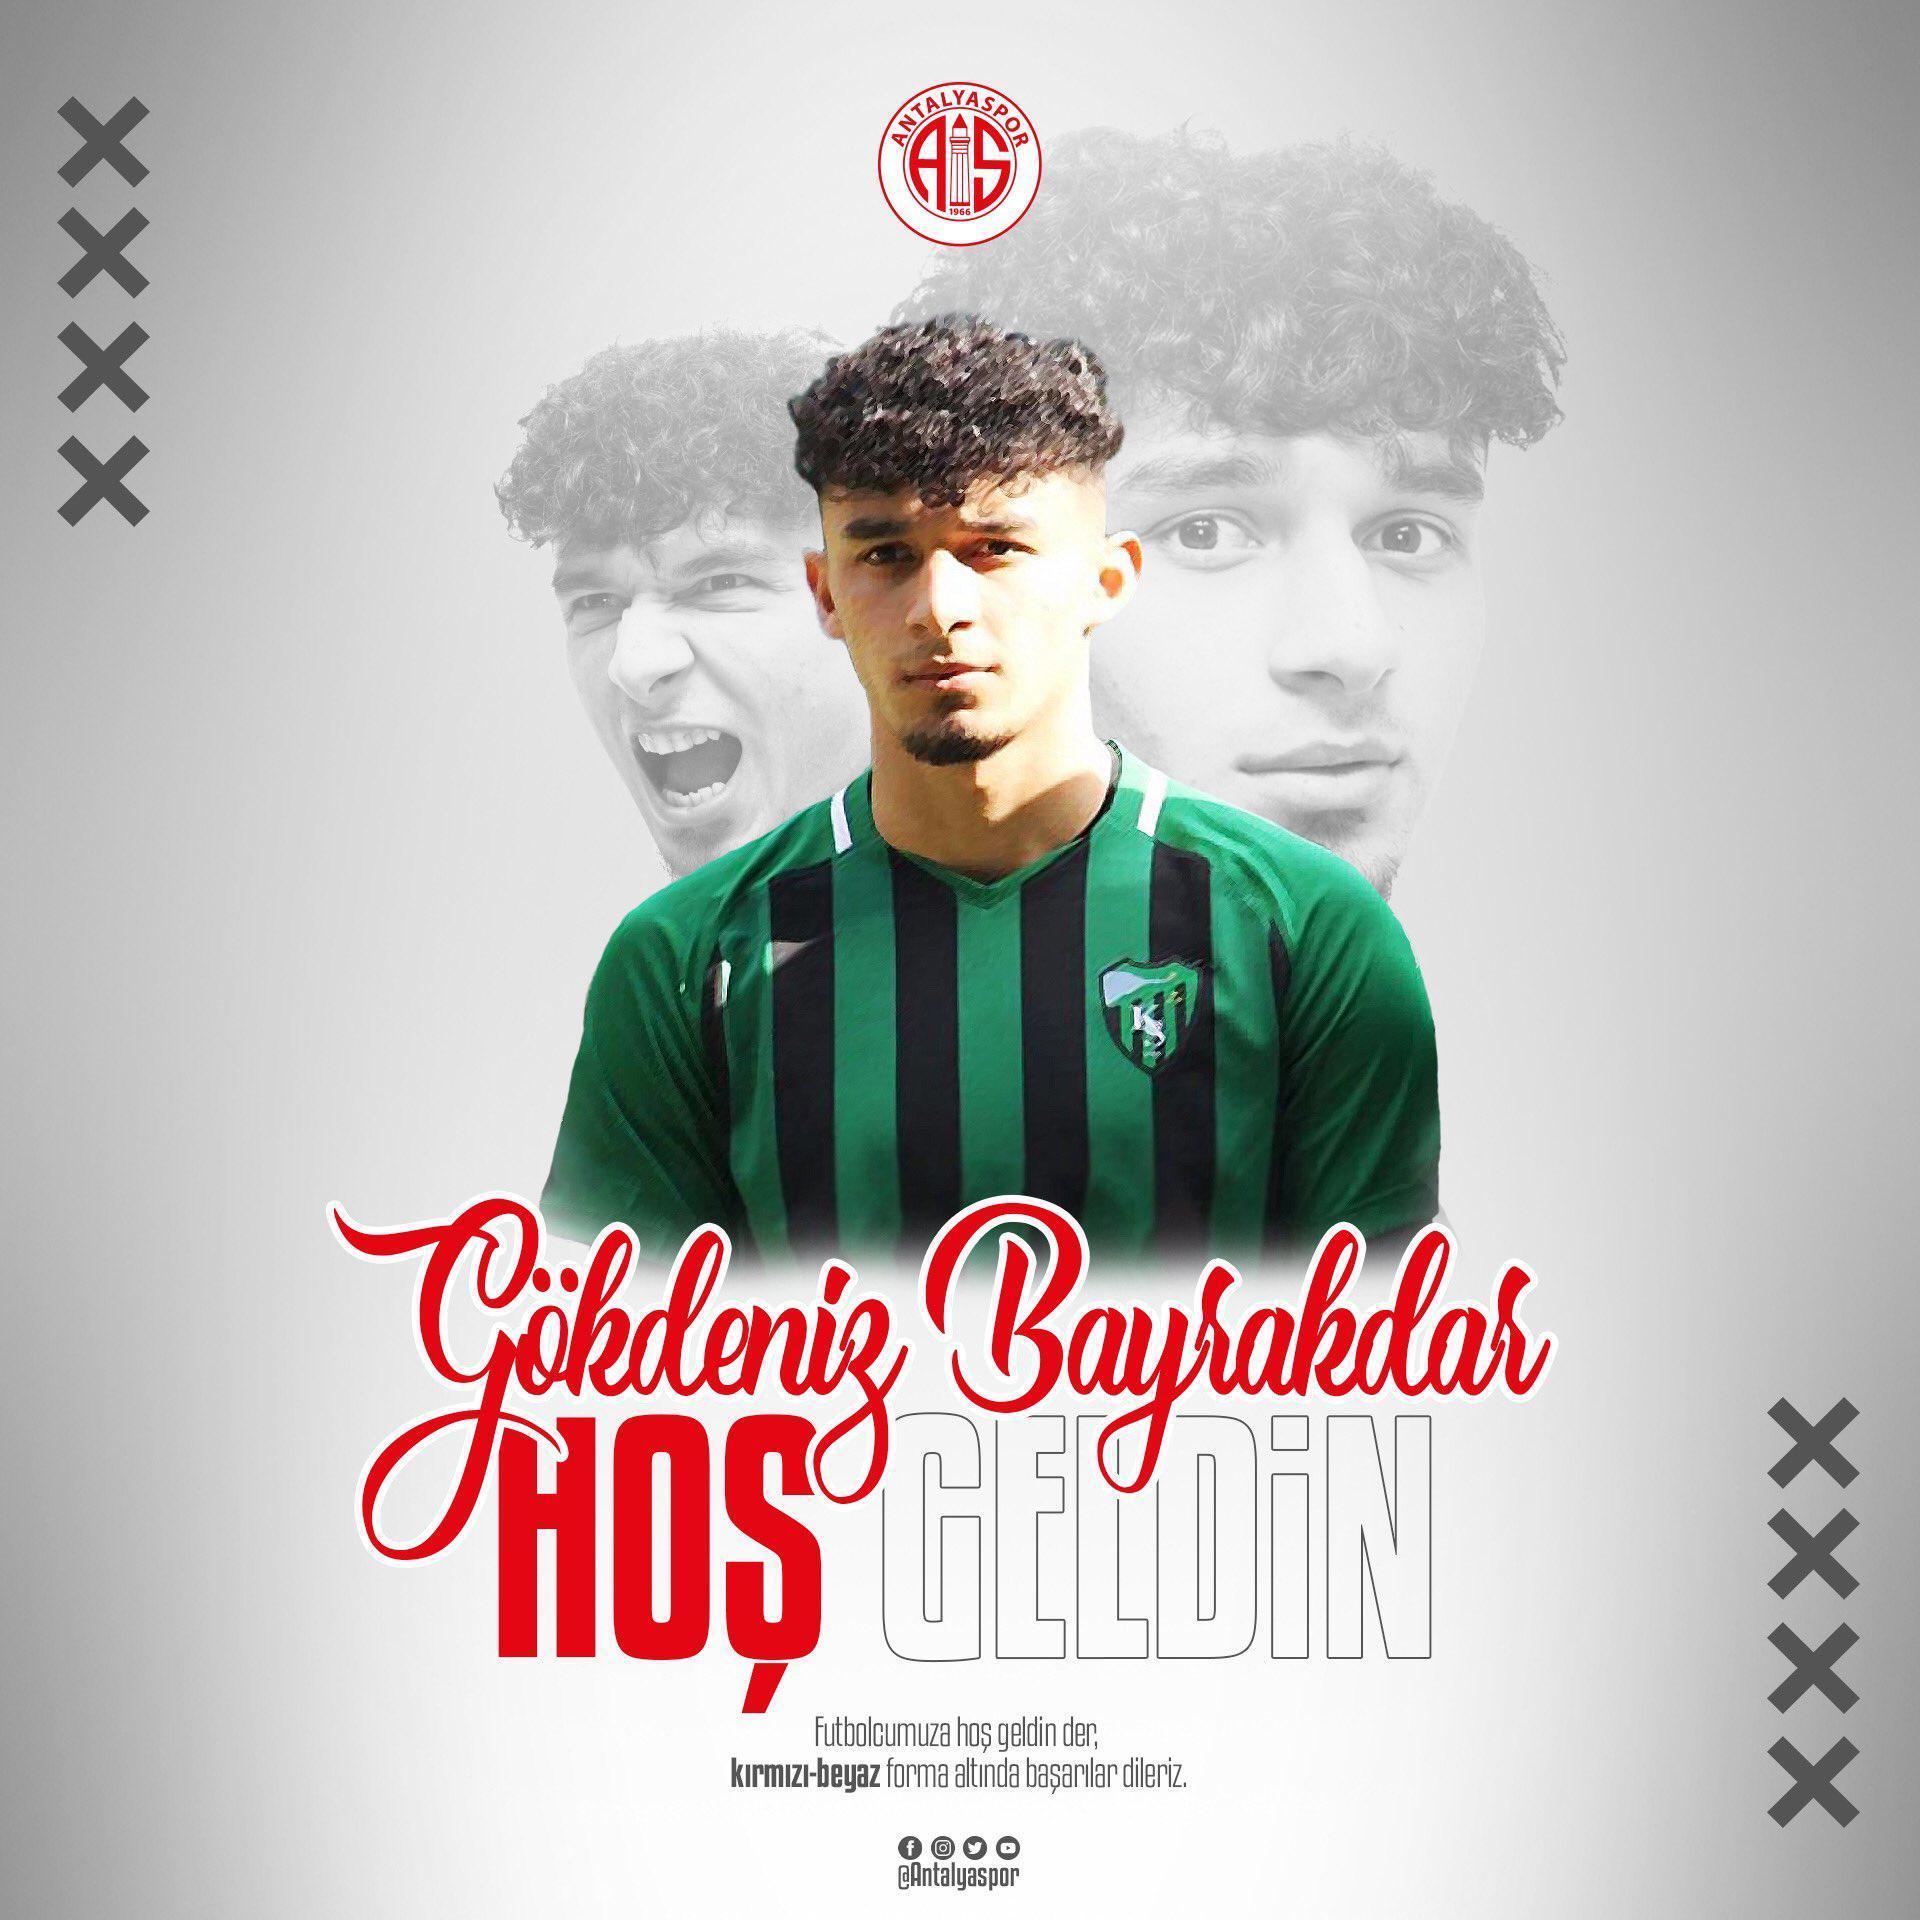 Son dakika | Antalyaspor Gökdeniz Bayrakdar transferini açıkladı